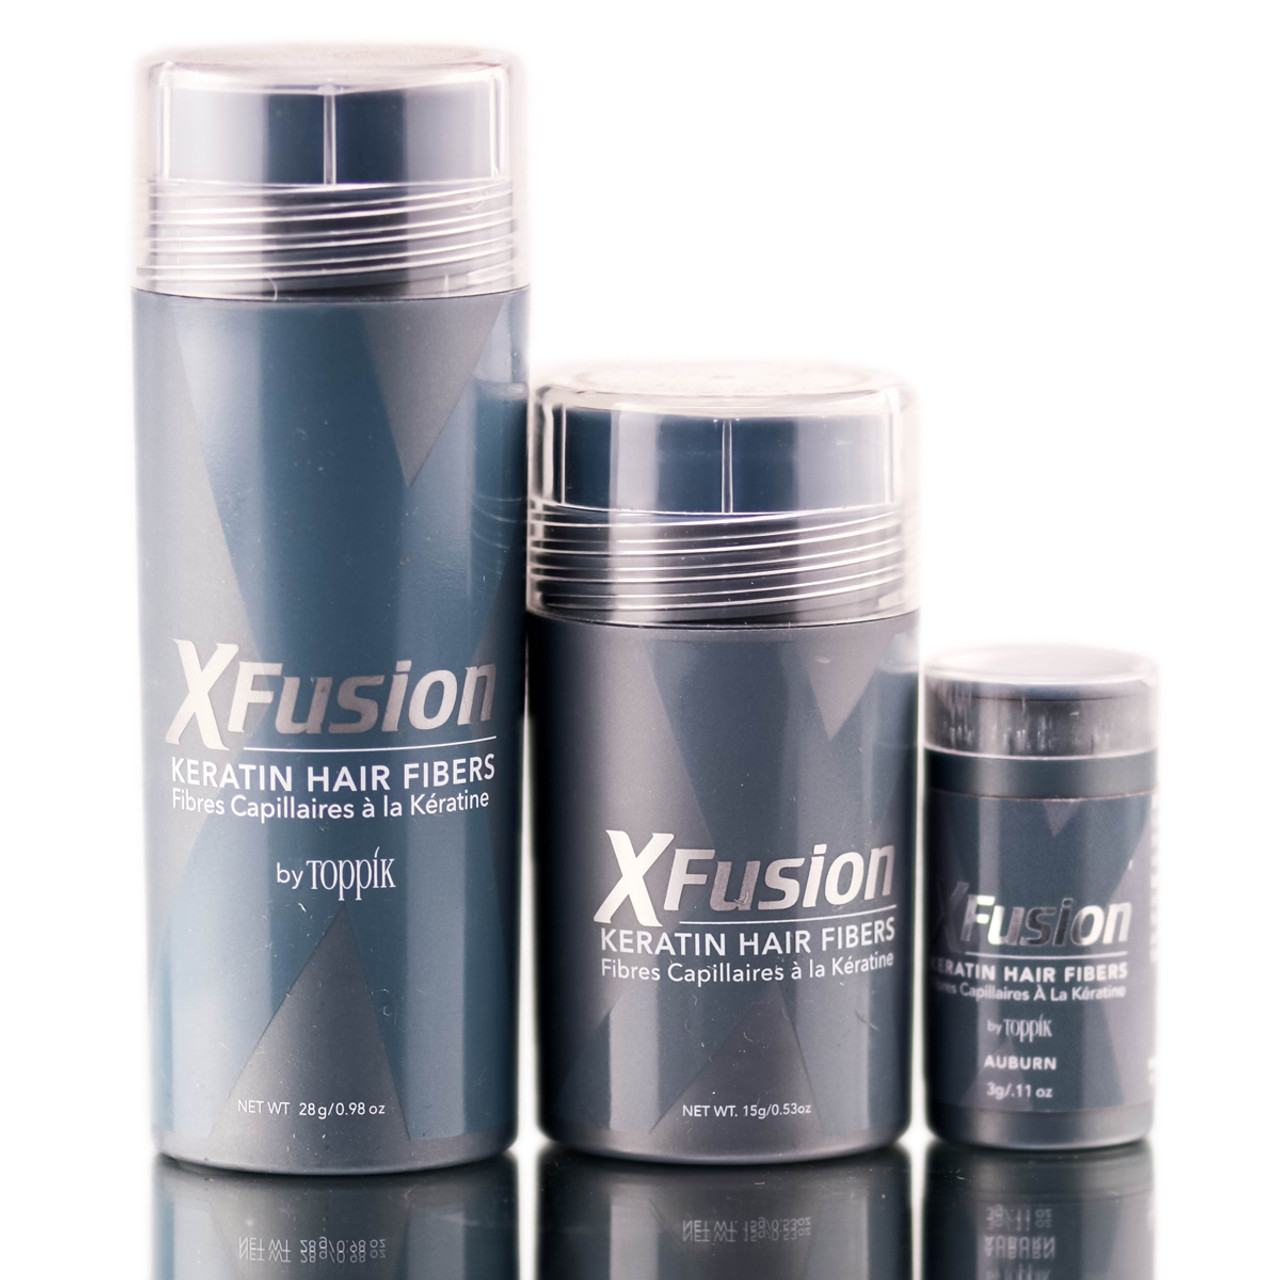 Xfusion keratin hair fibers